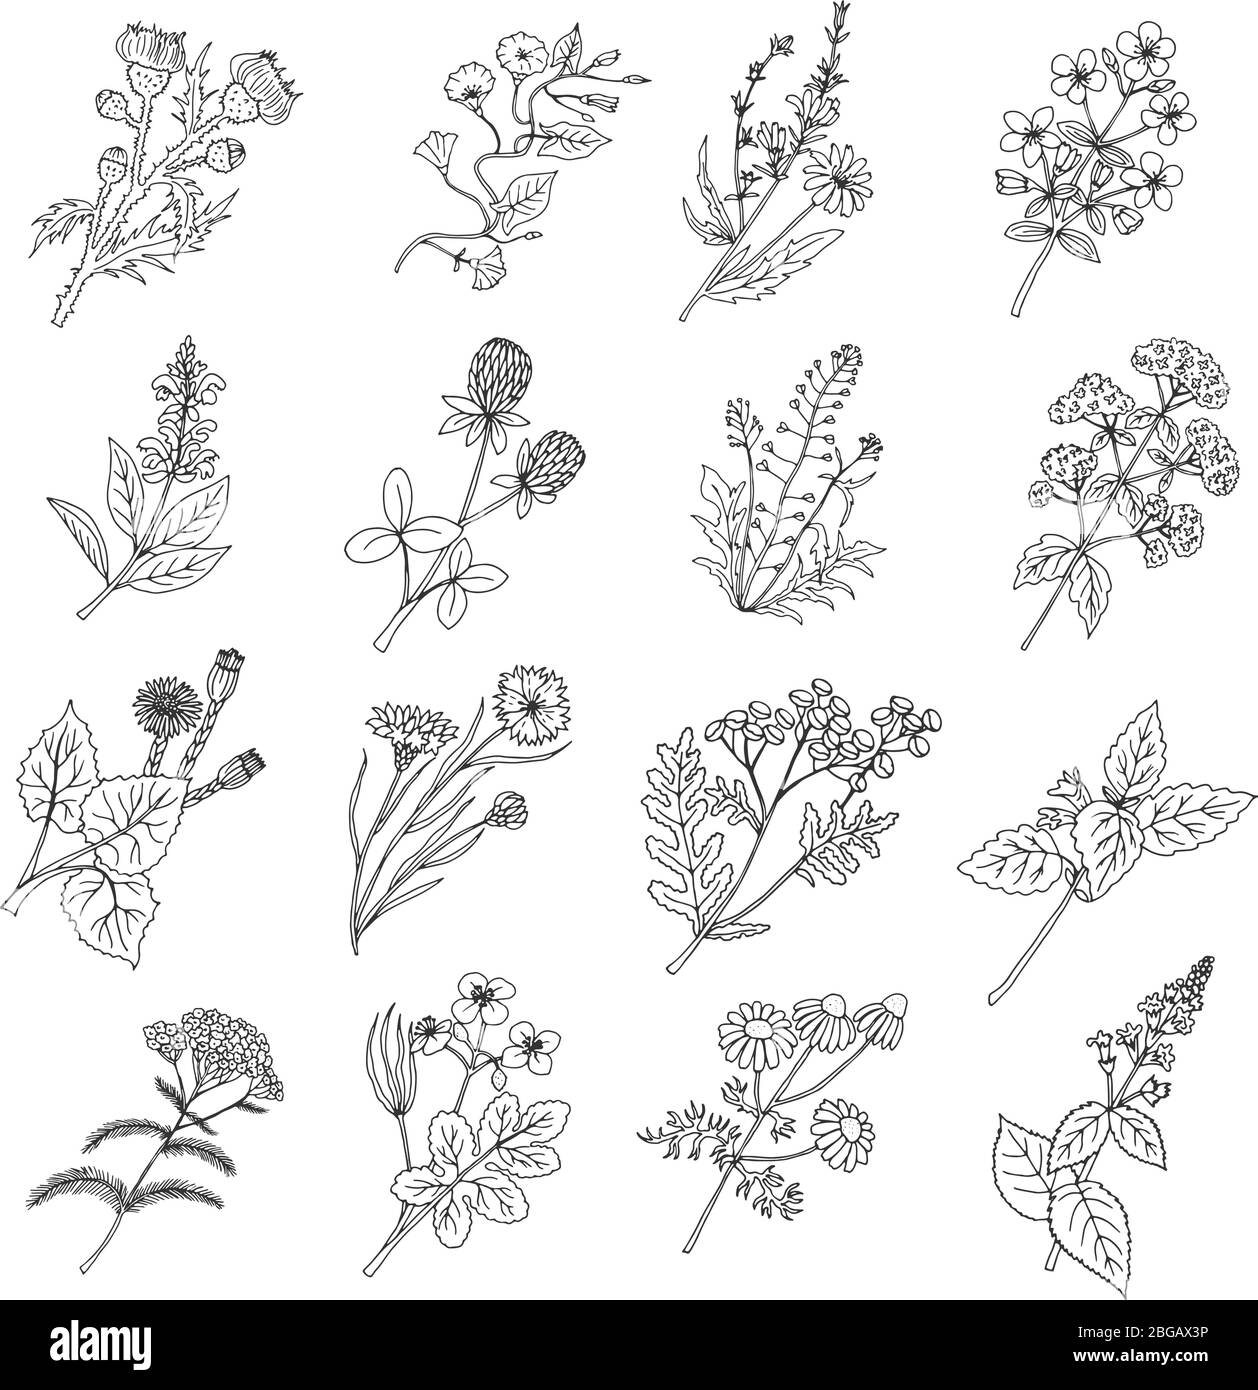 Dessins d'esquisse botaniques. Illustration vectorielle de fleurs et d'herbes botaniques Illustration de Vecteur